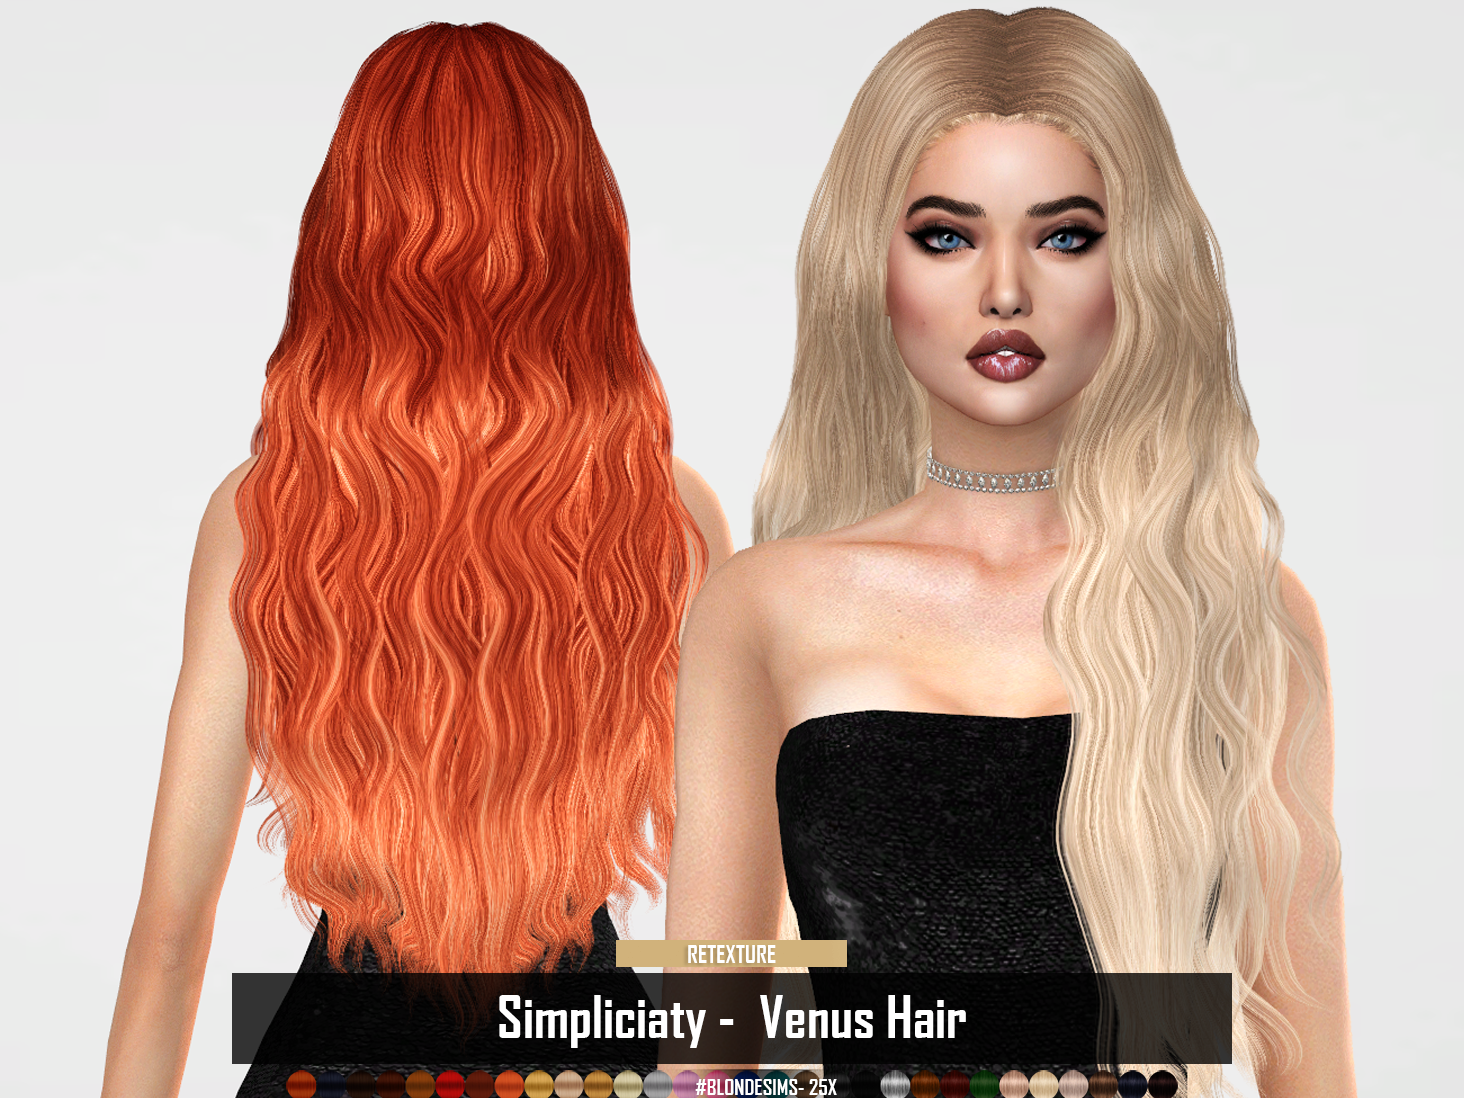 Simpliciaty Venus Hair Retexture Ruchell Cc S E